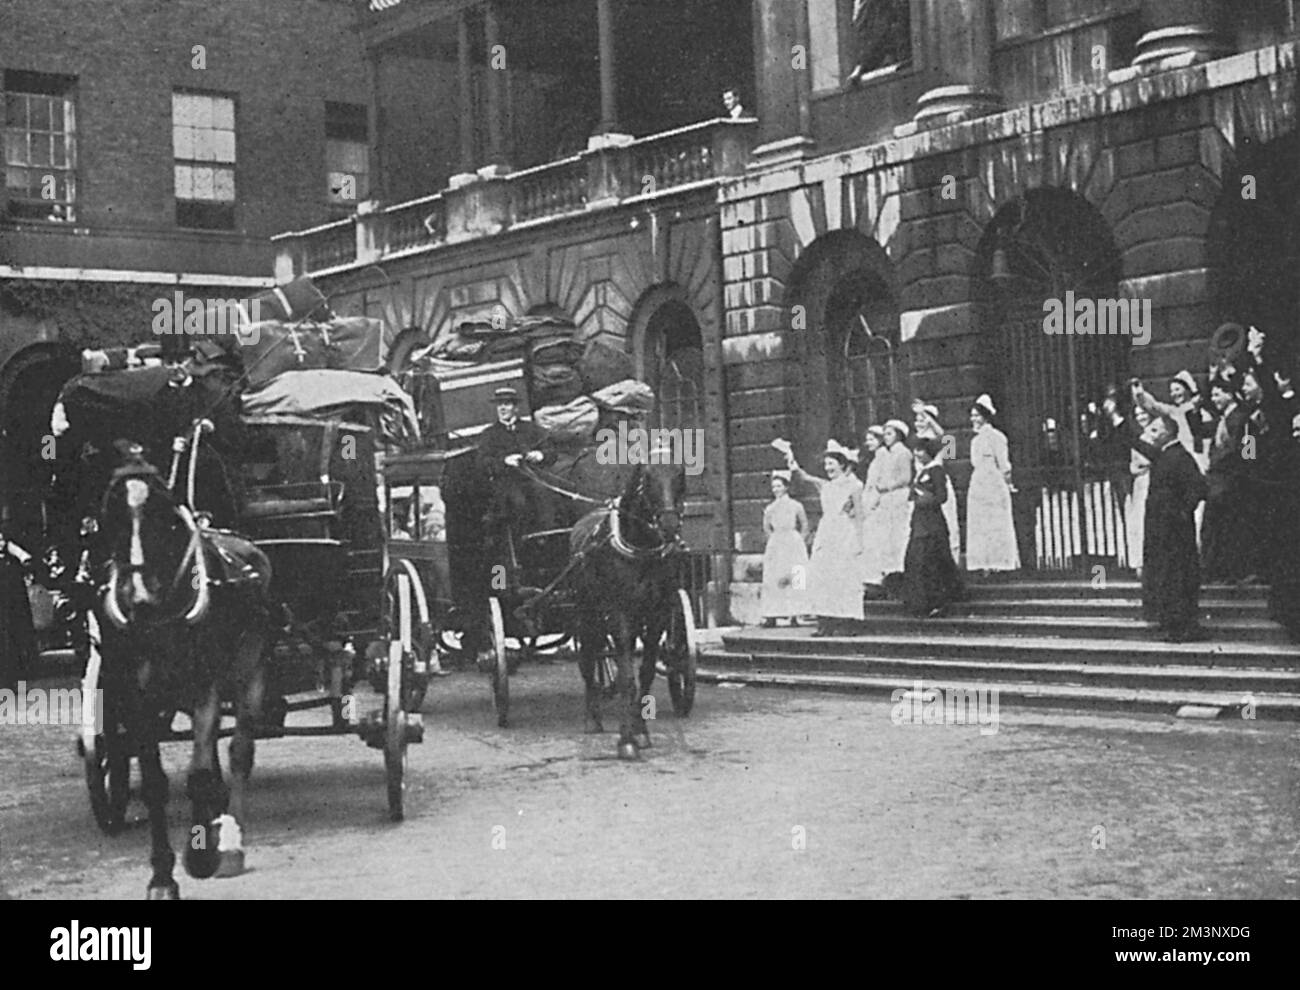 Une unité de la Croix-Rouge quitte le Guy's Hospital de Londres, destiné à la première ligne et recevant un envoi du personnel de l'hôpital. Une unité se composait de dix chirurgiens, dix commodes et vingt infirmières d'hôpital entièrement qualifiées. Août 1914 Banque D'Images